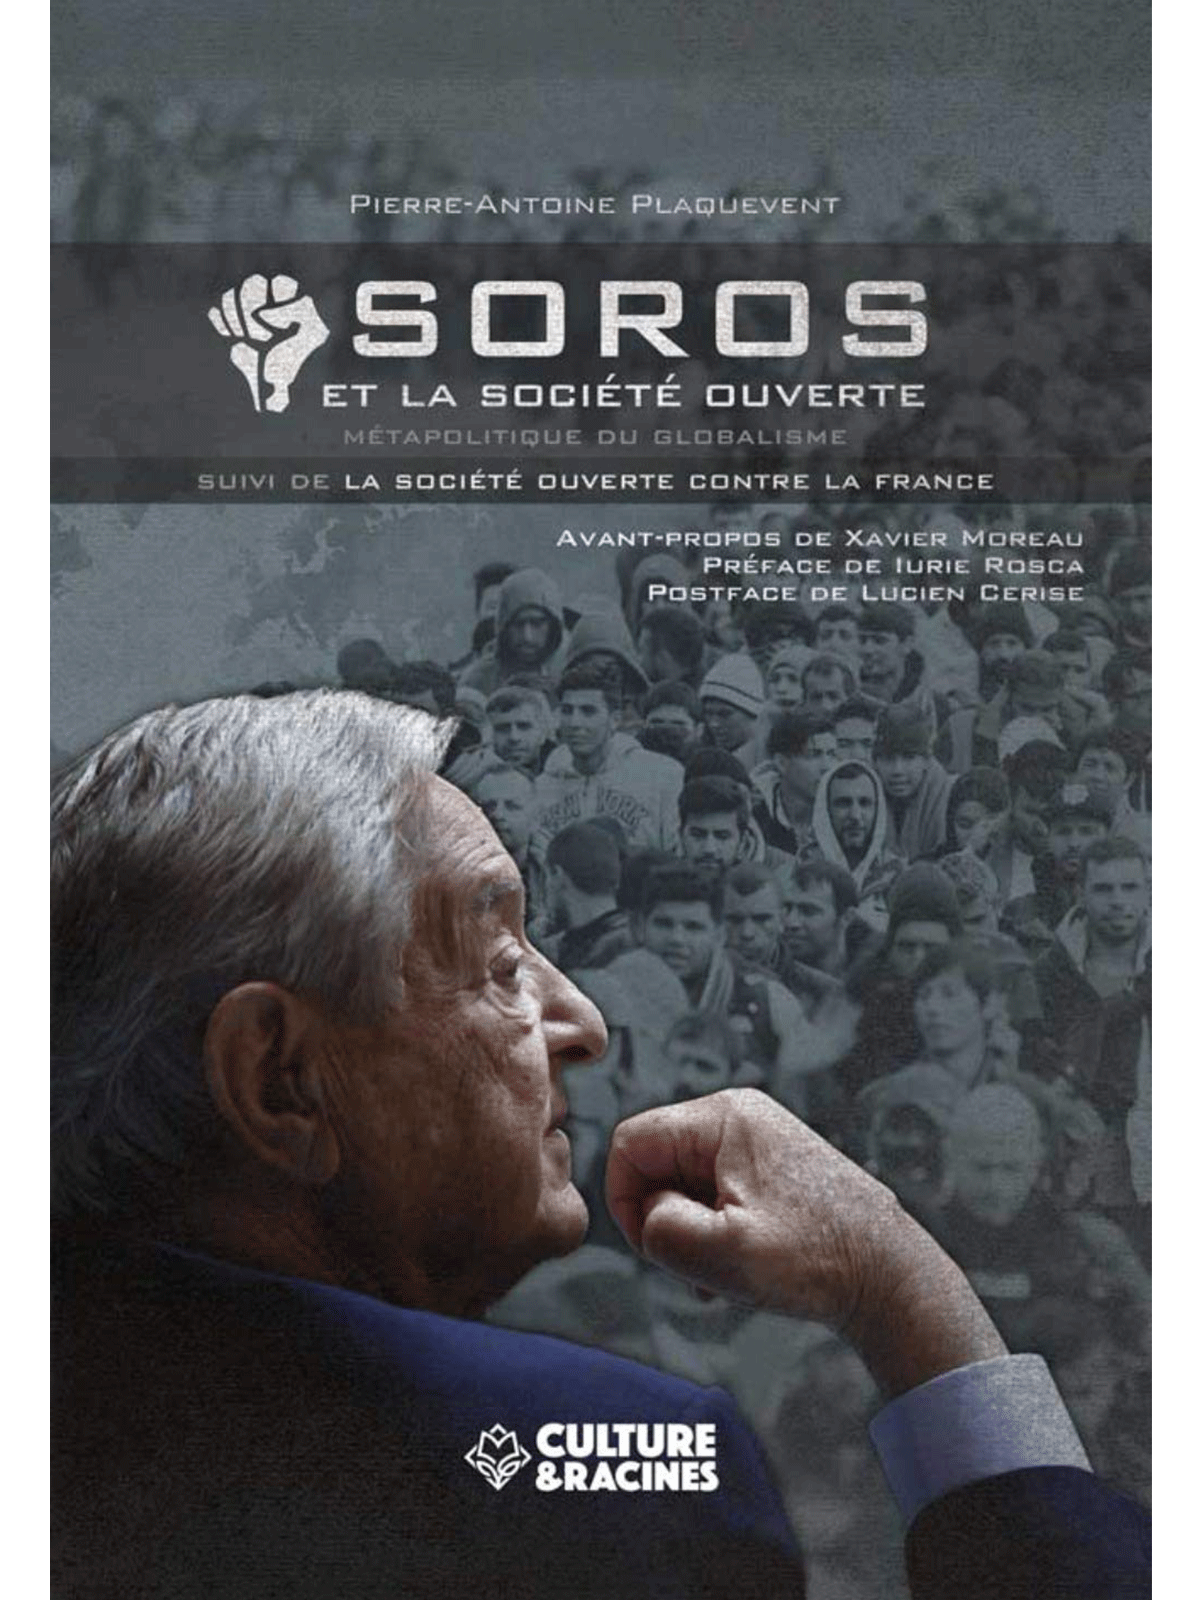 Pierre-Antoine Plaquevent : Soros et la société ouverte, Métapolitique du Globalisme